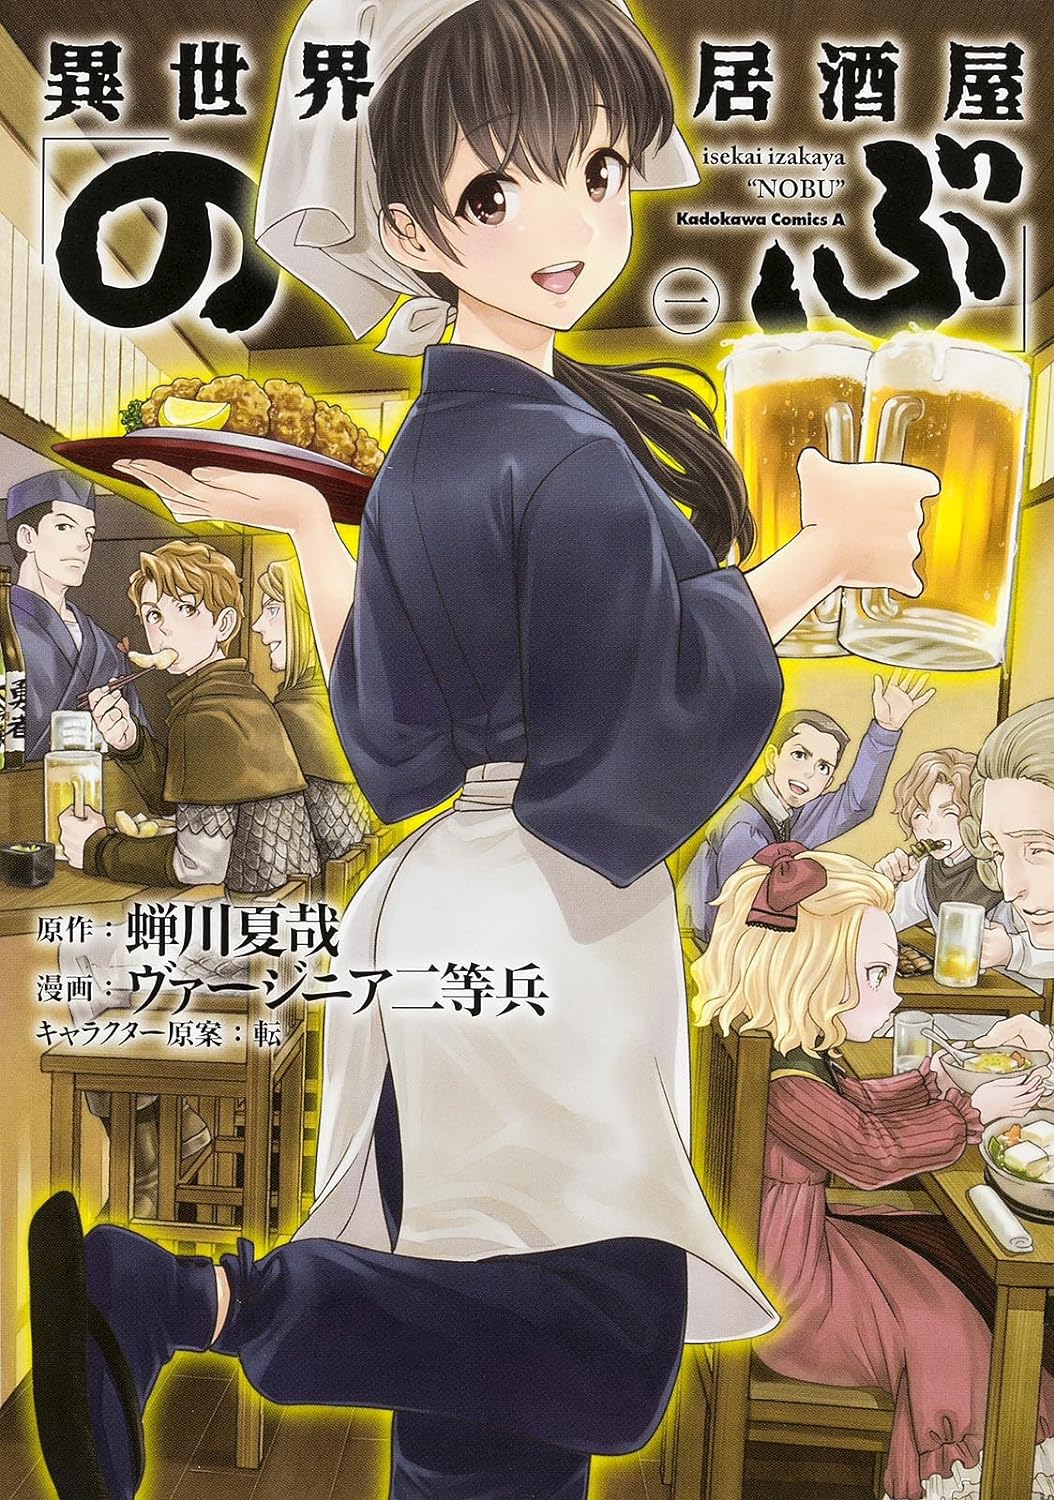 isekai izakaya NOBU Vol.1-17 set Manga Comics Japanese Food From Another  World | eBay